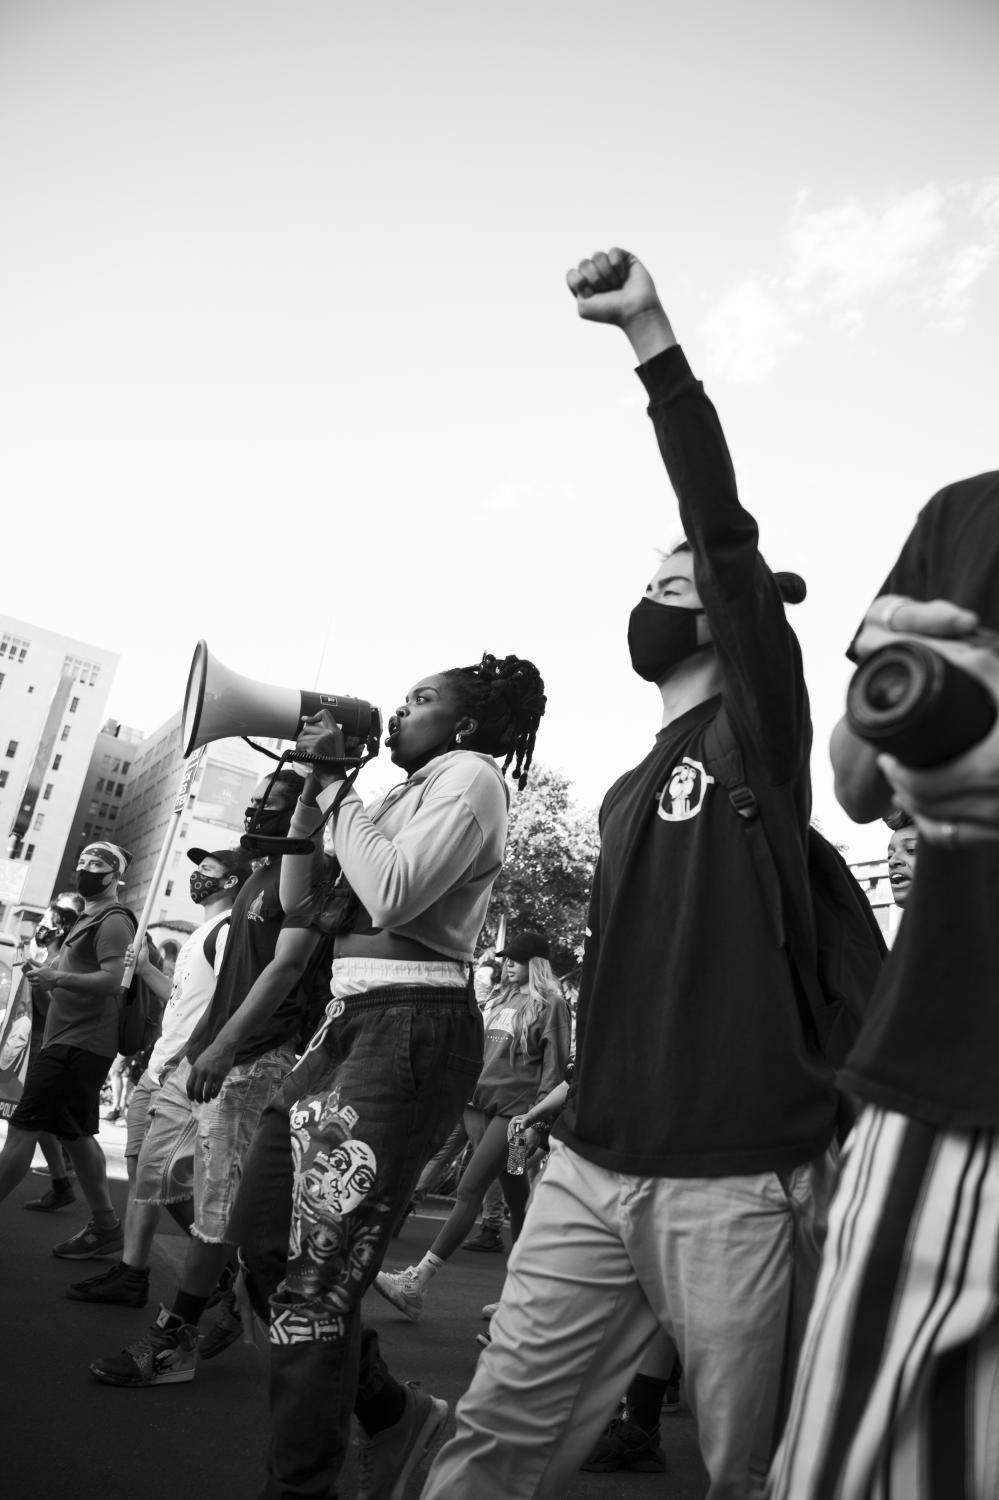 Black Lives Matter 2020 Protests